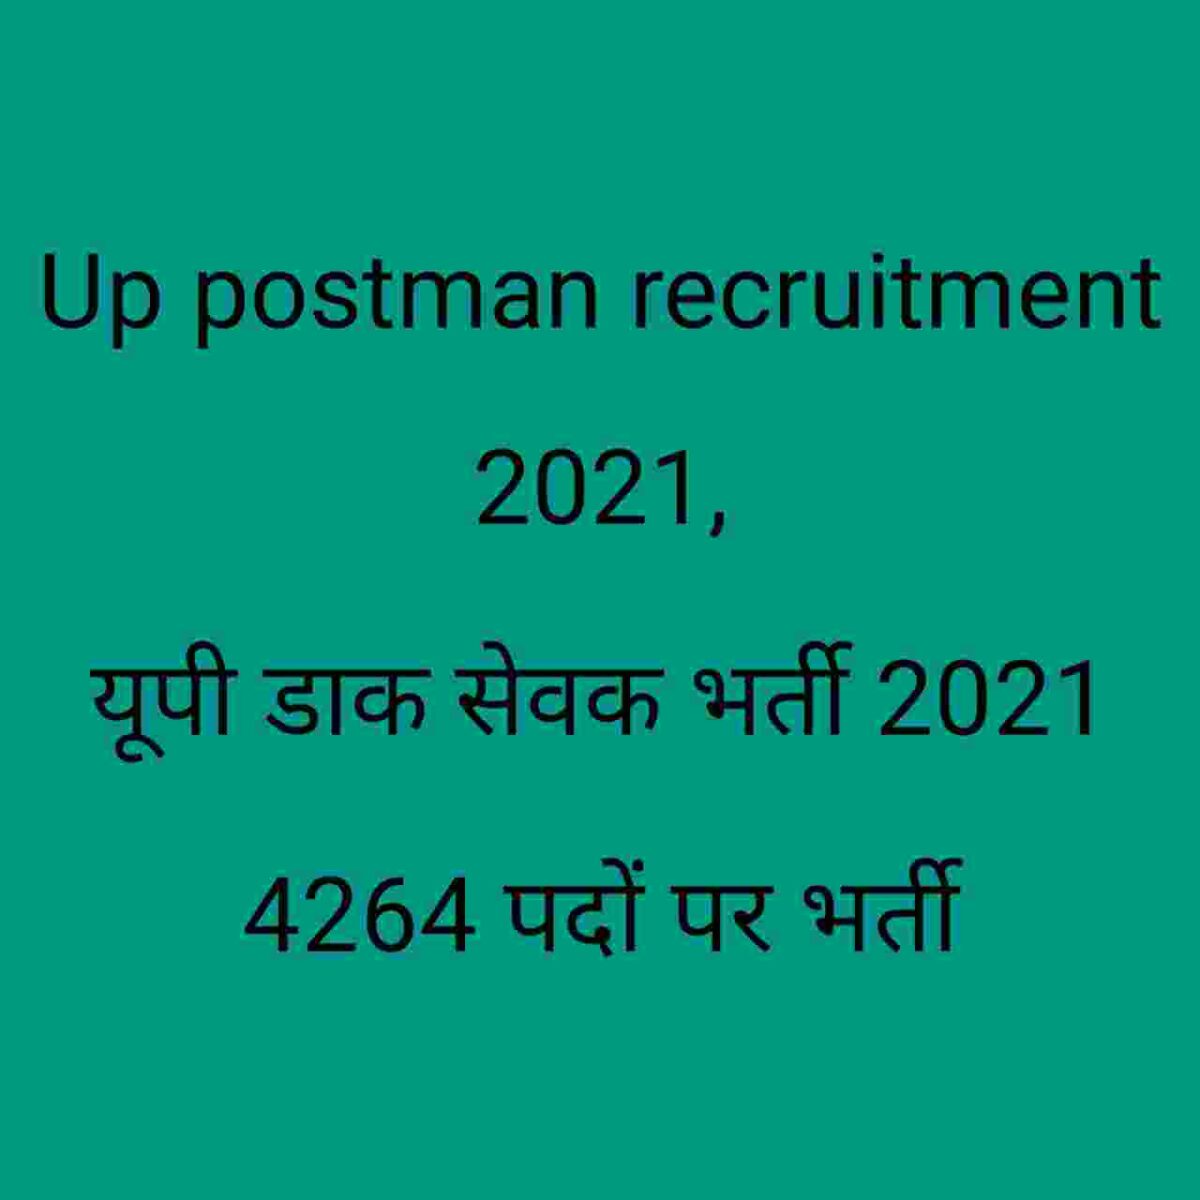 Up postman recruitment 